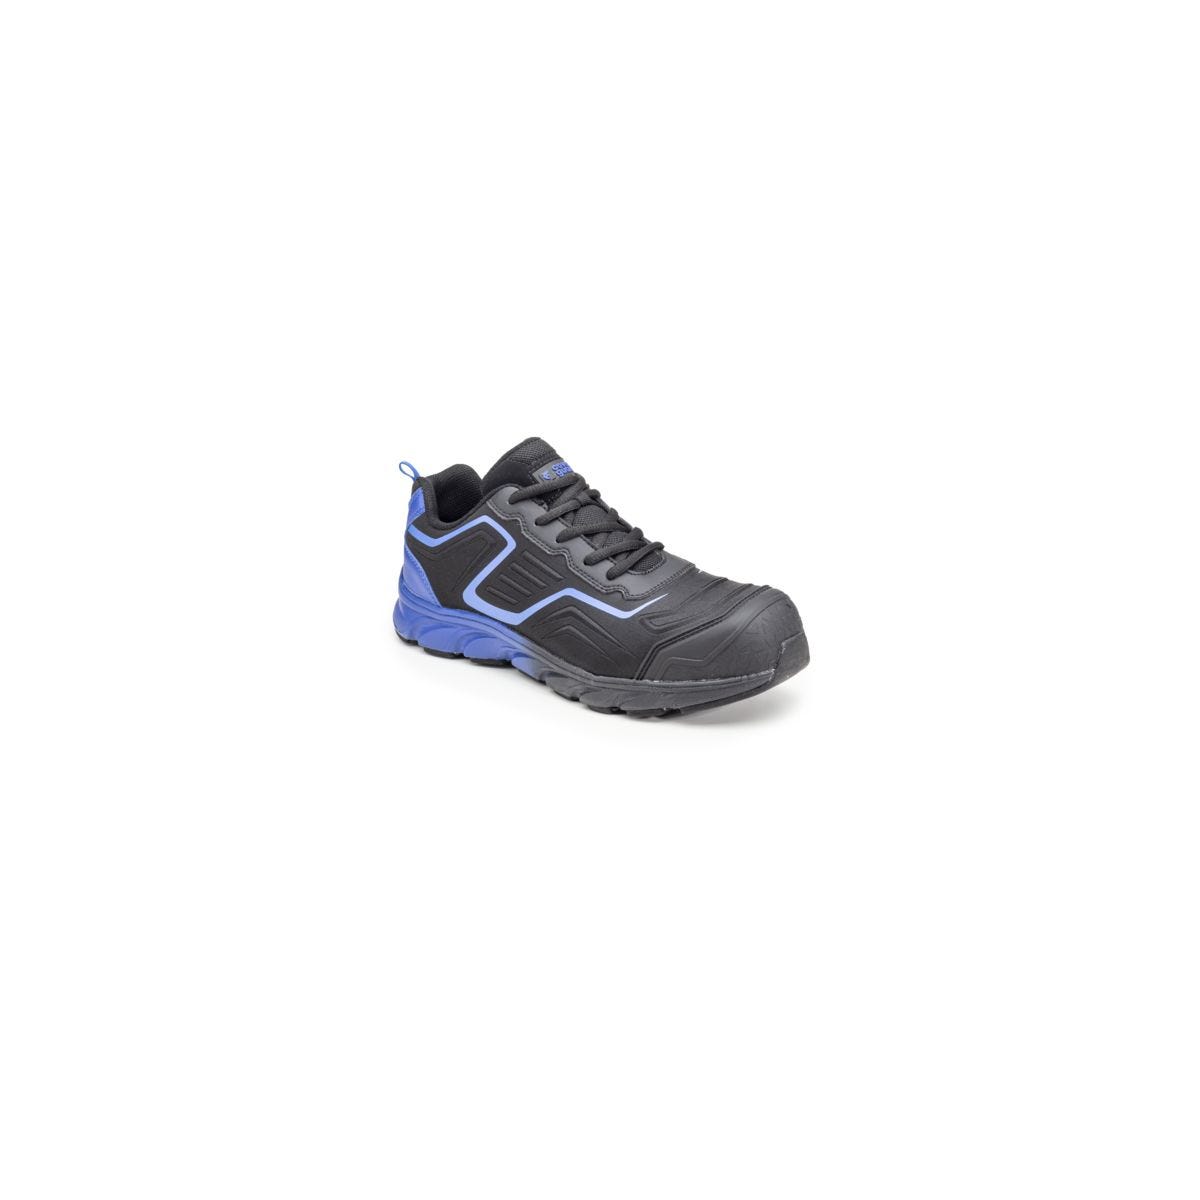 Chaussures de sécurité S3 SAPHIR Basse Maille Noir Bleu - COVERGUARD - Taille 38 0